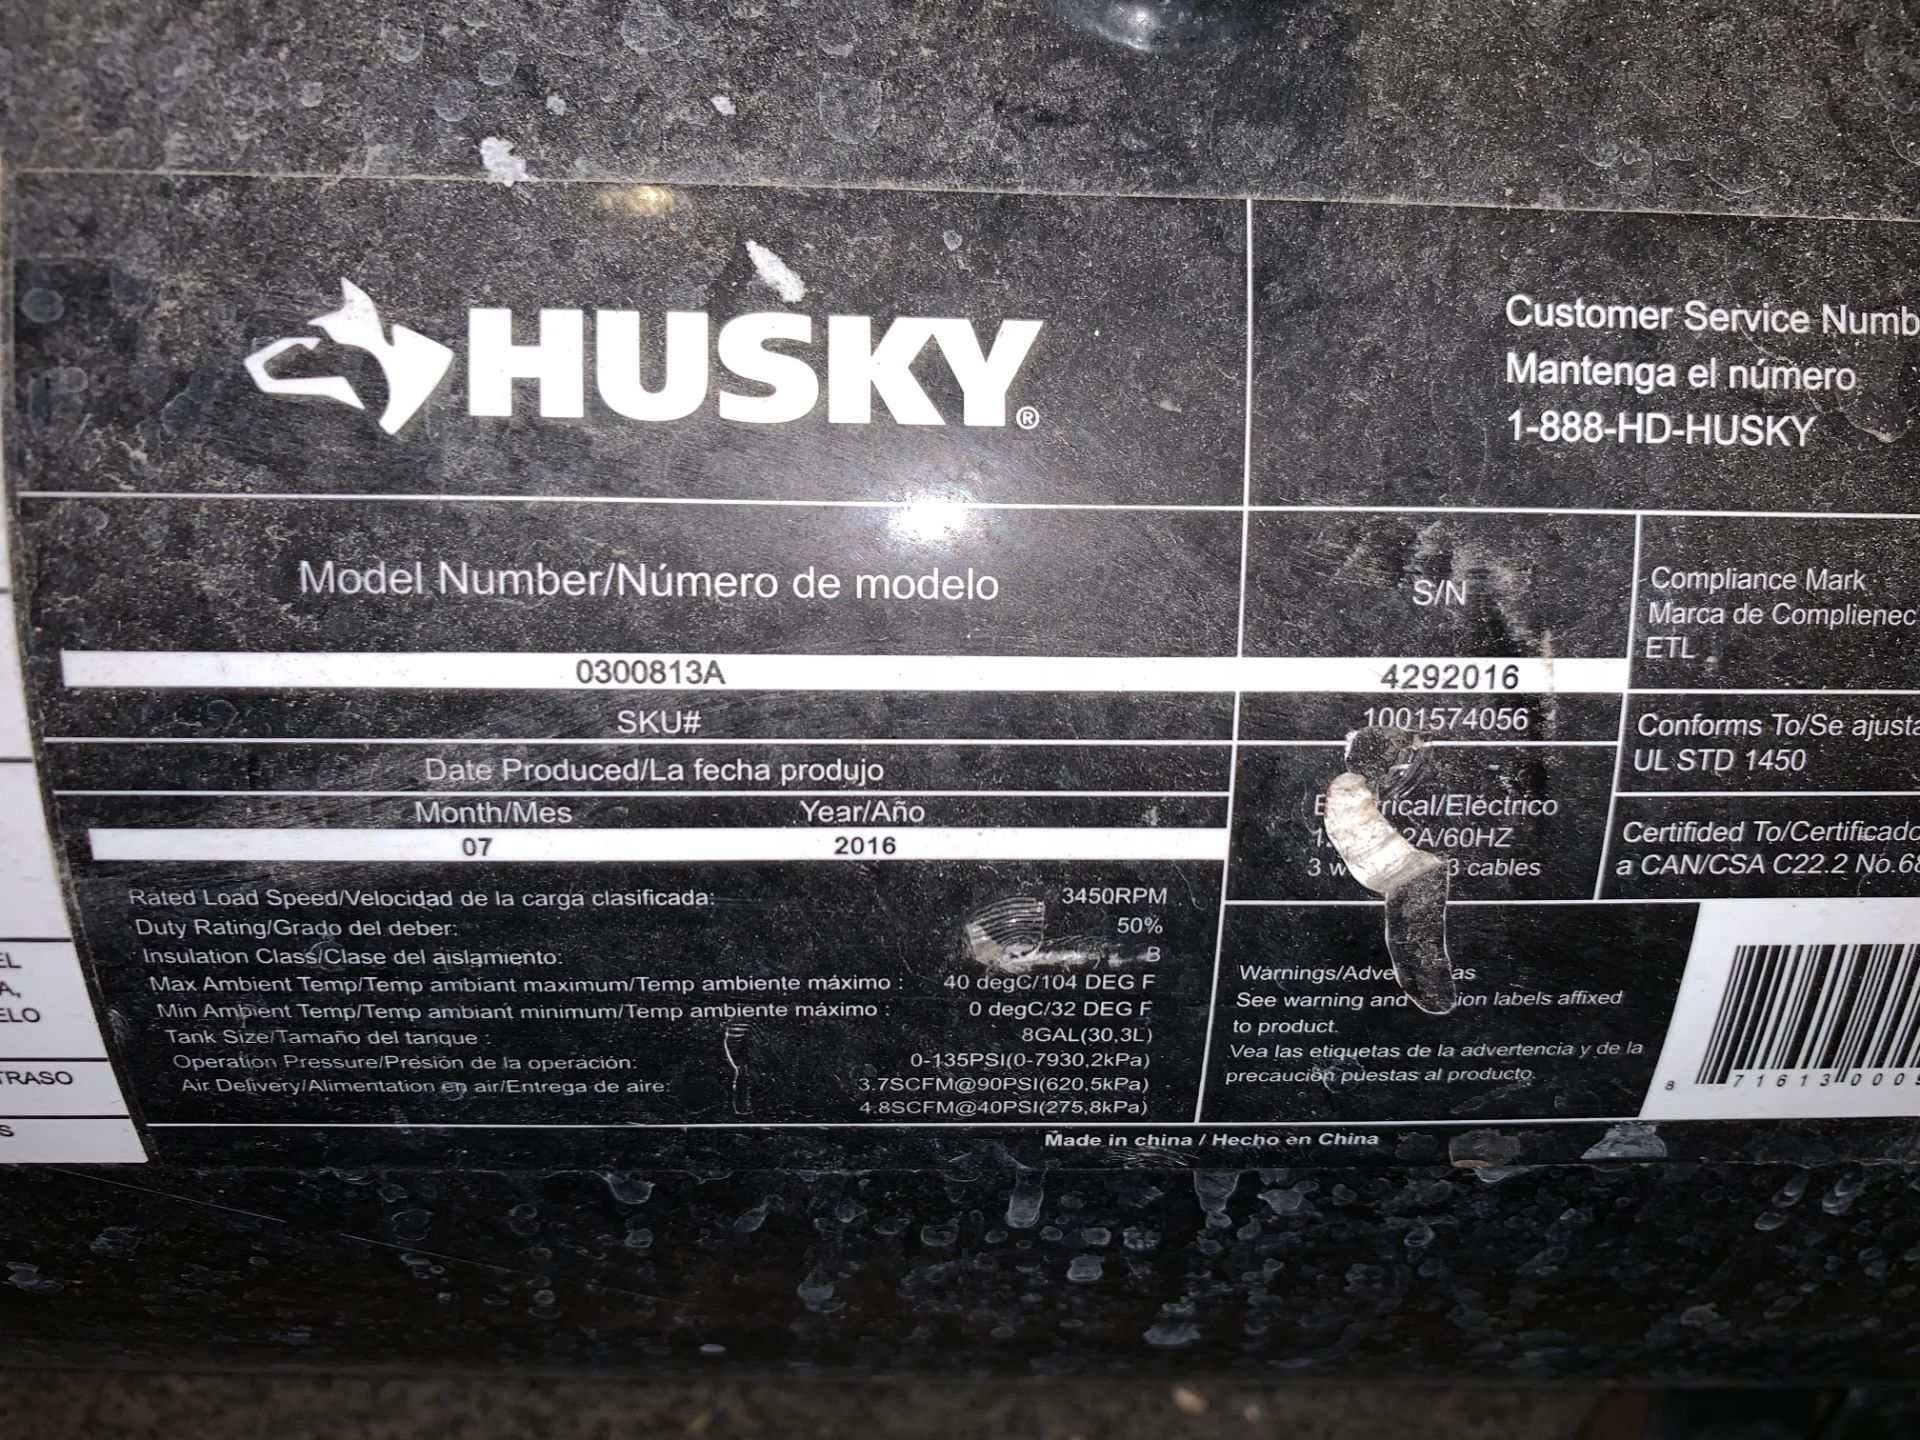 Husky Air Compressor - Subj to Bulk | Rig Fee: $50 - Image 4 of 4